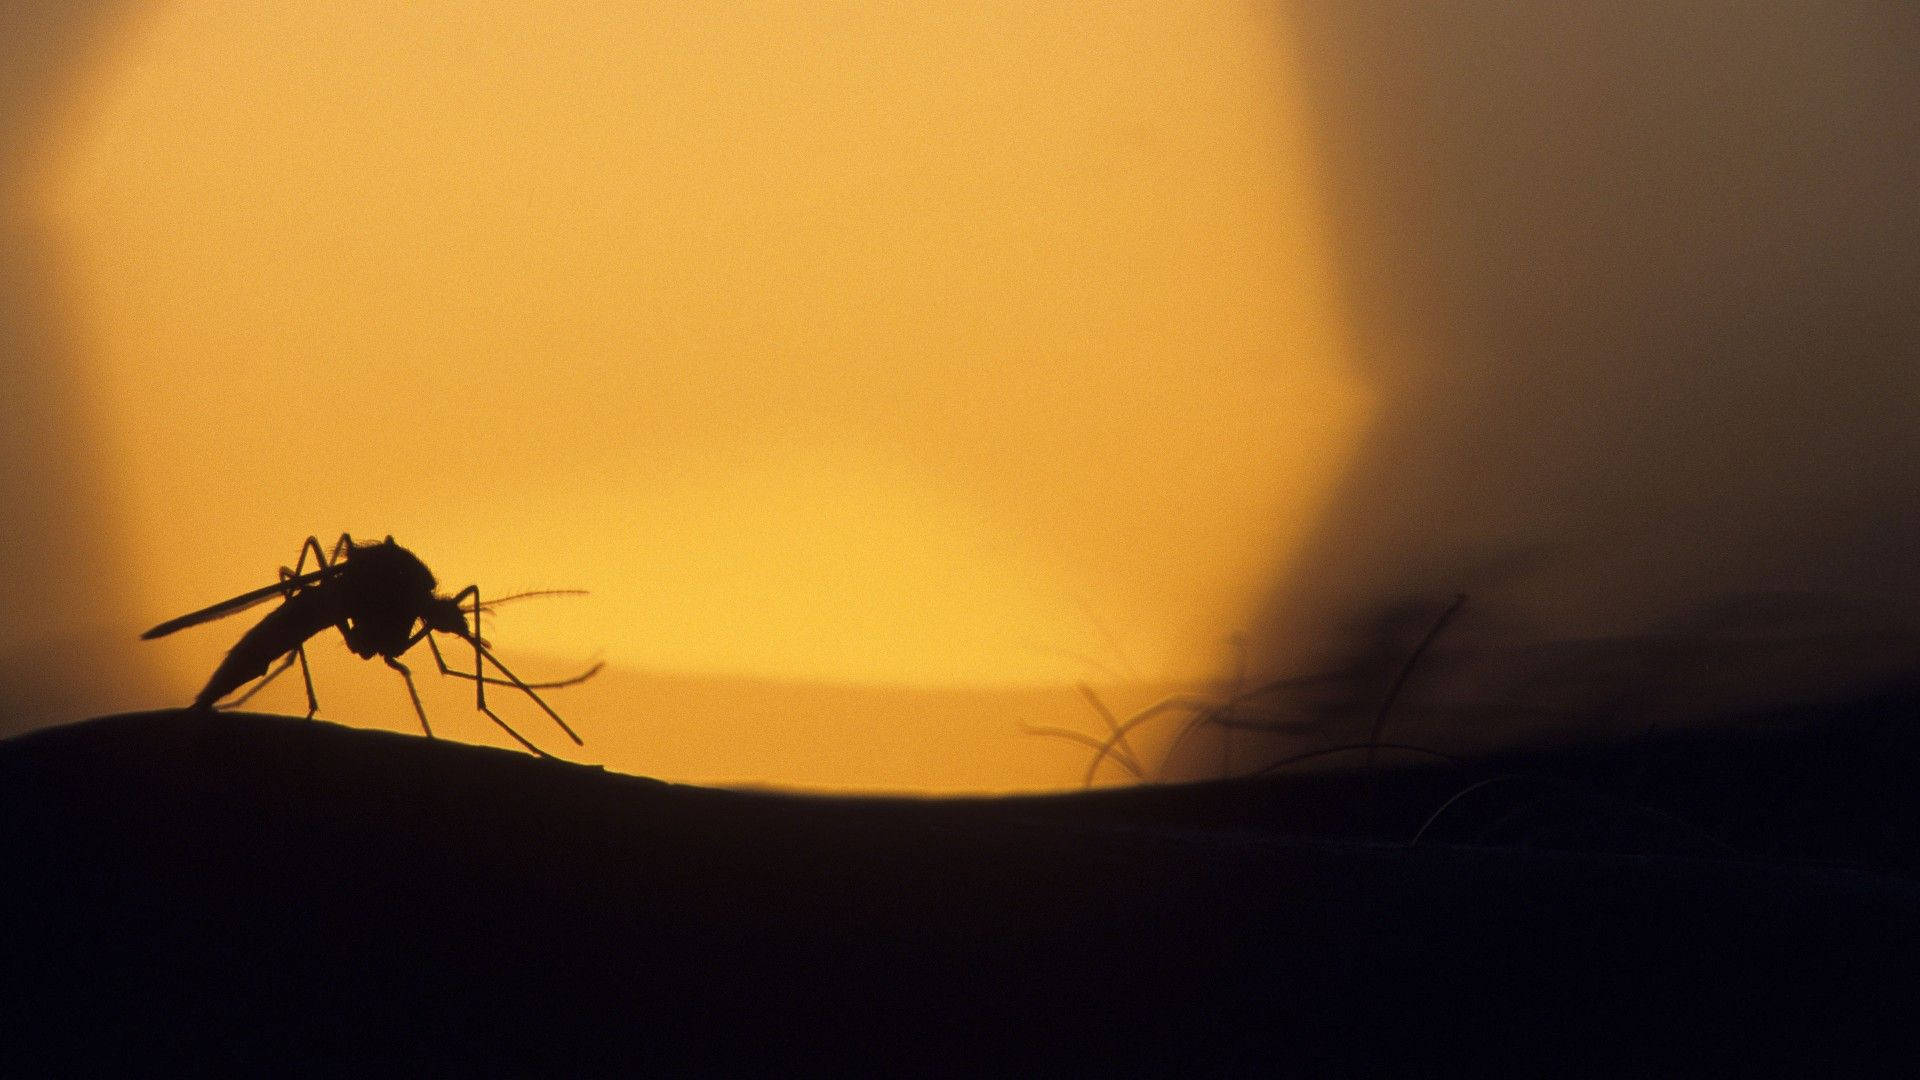 Lasombra Del Mosquito Durante La Puesta De Sol. Fondo de pantalla